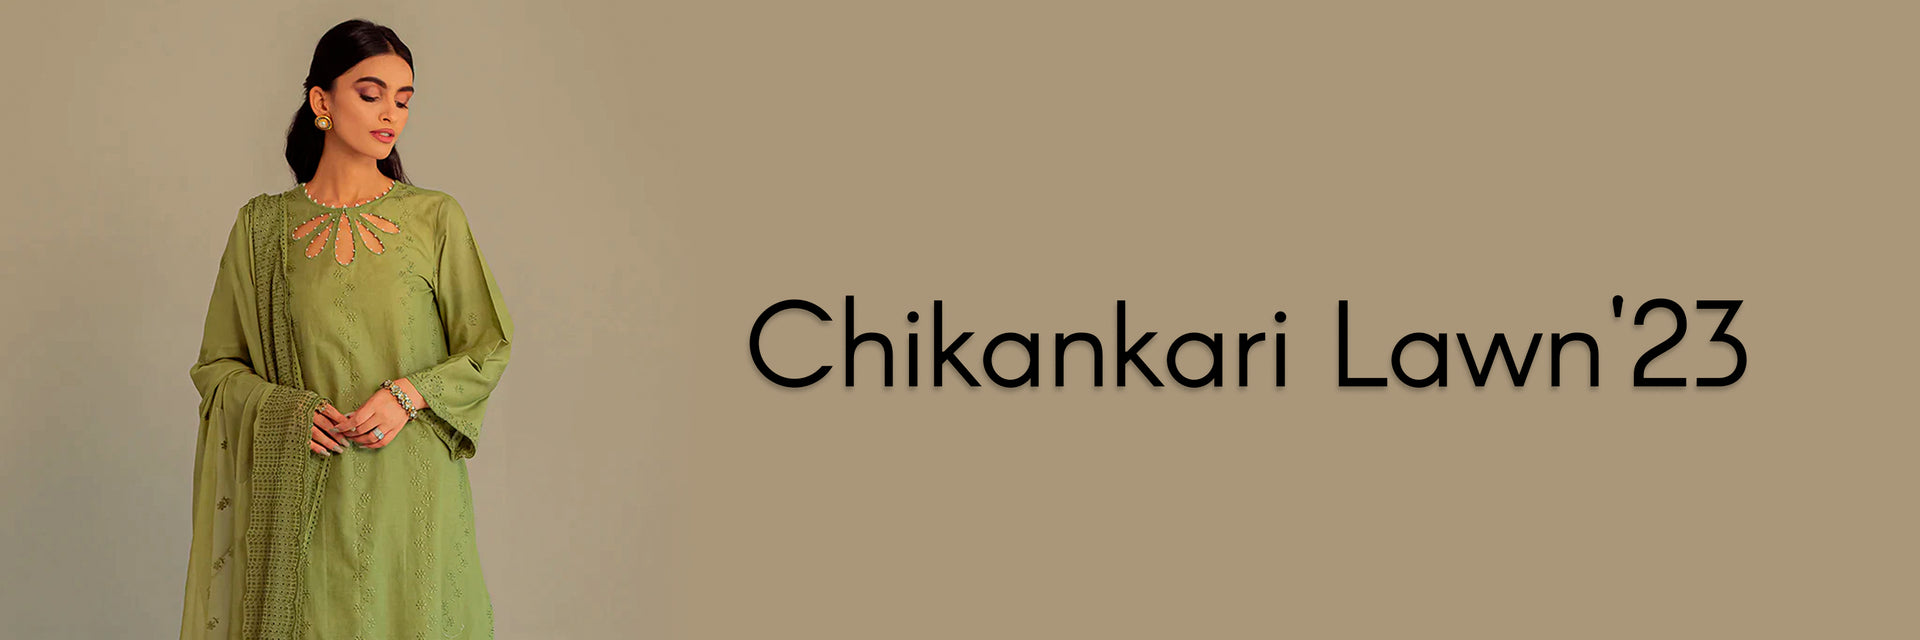 Chikankari Lawn'23